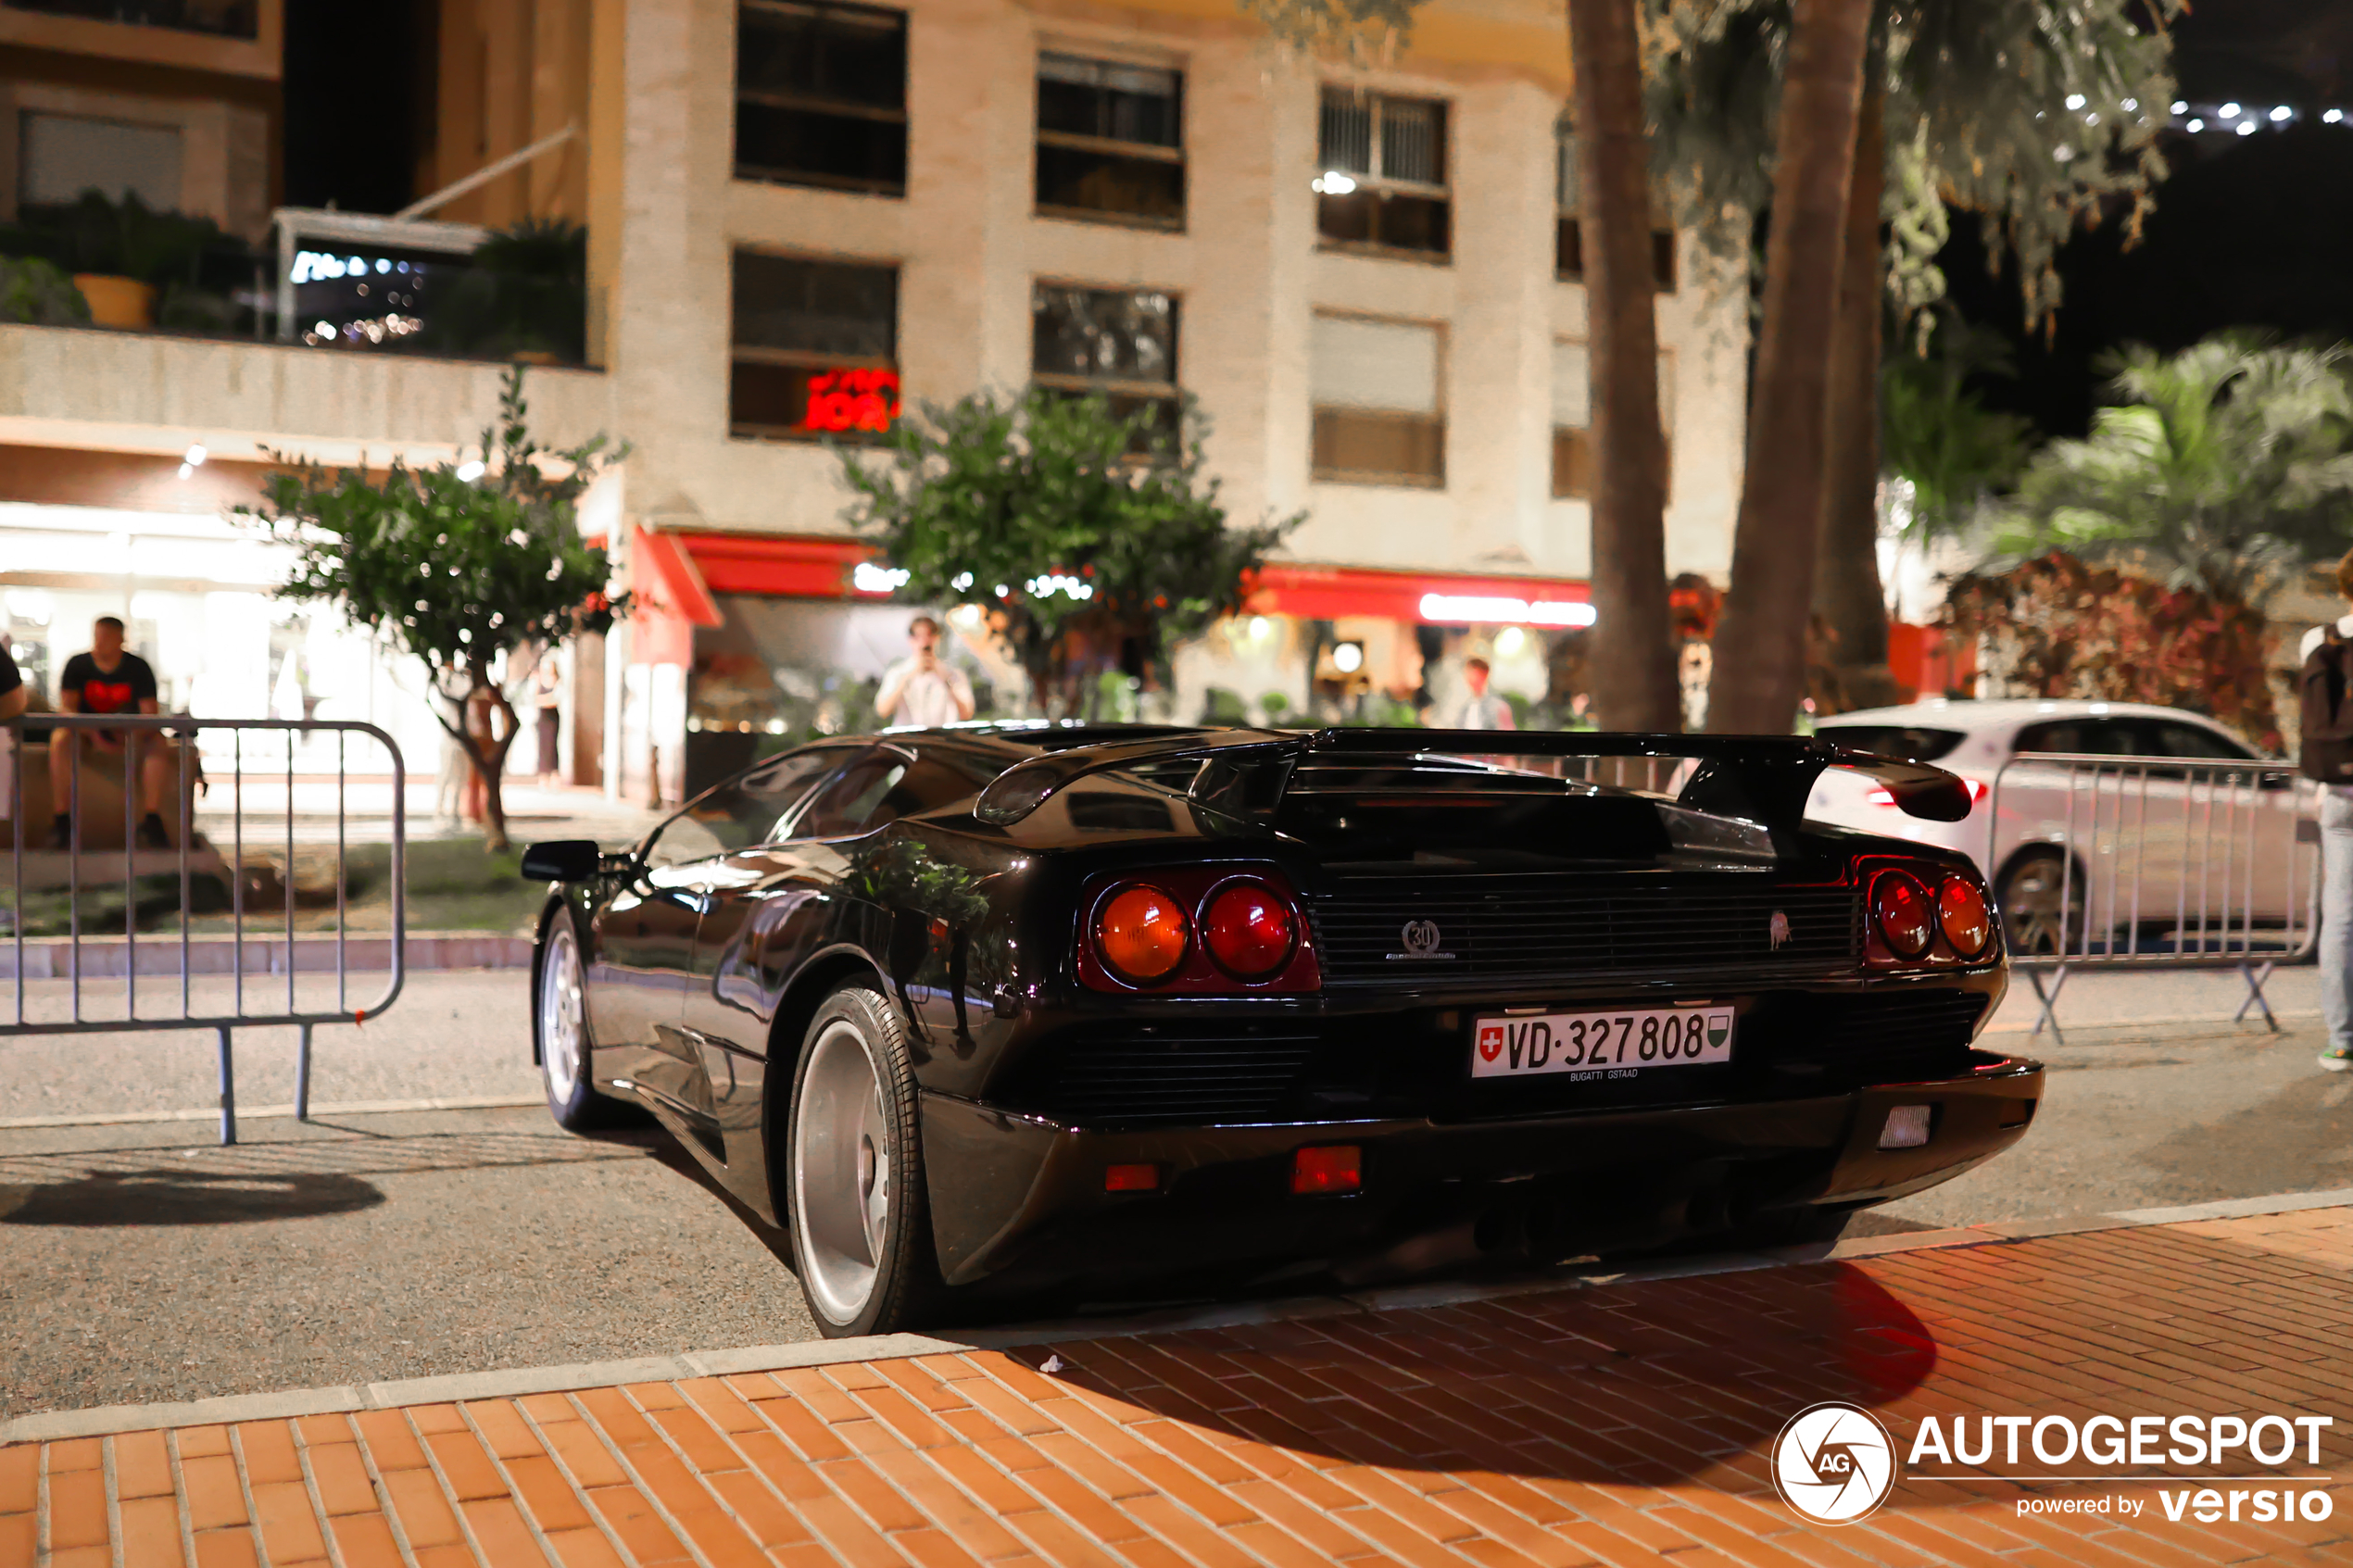 Iconen worden ook nog in Monaco gespot: Lamborghini Diablo SE30